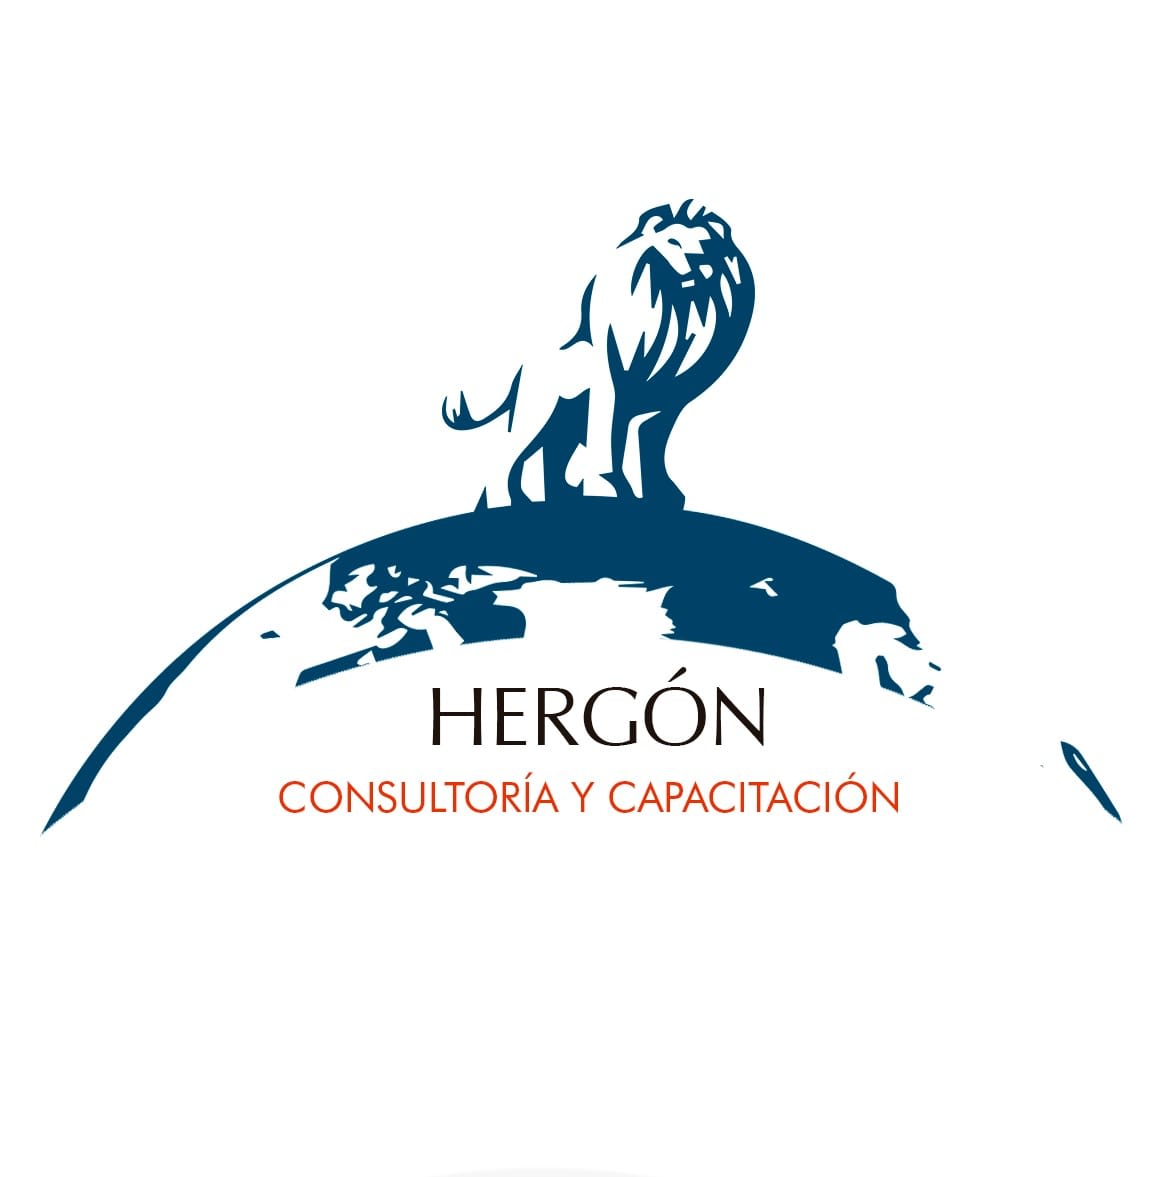 Hergon Consultoría Y Capacitación